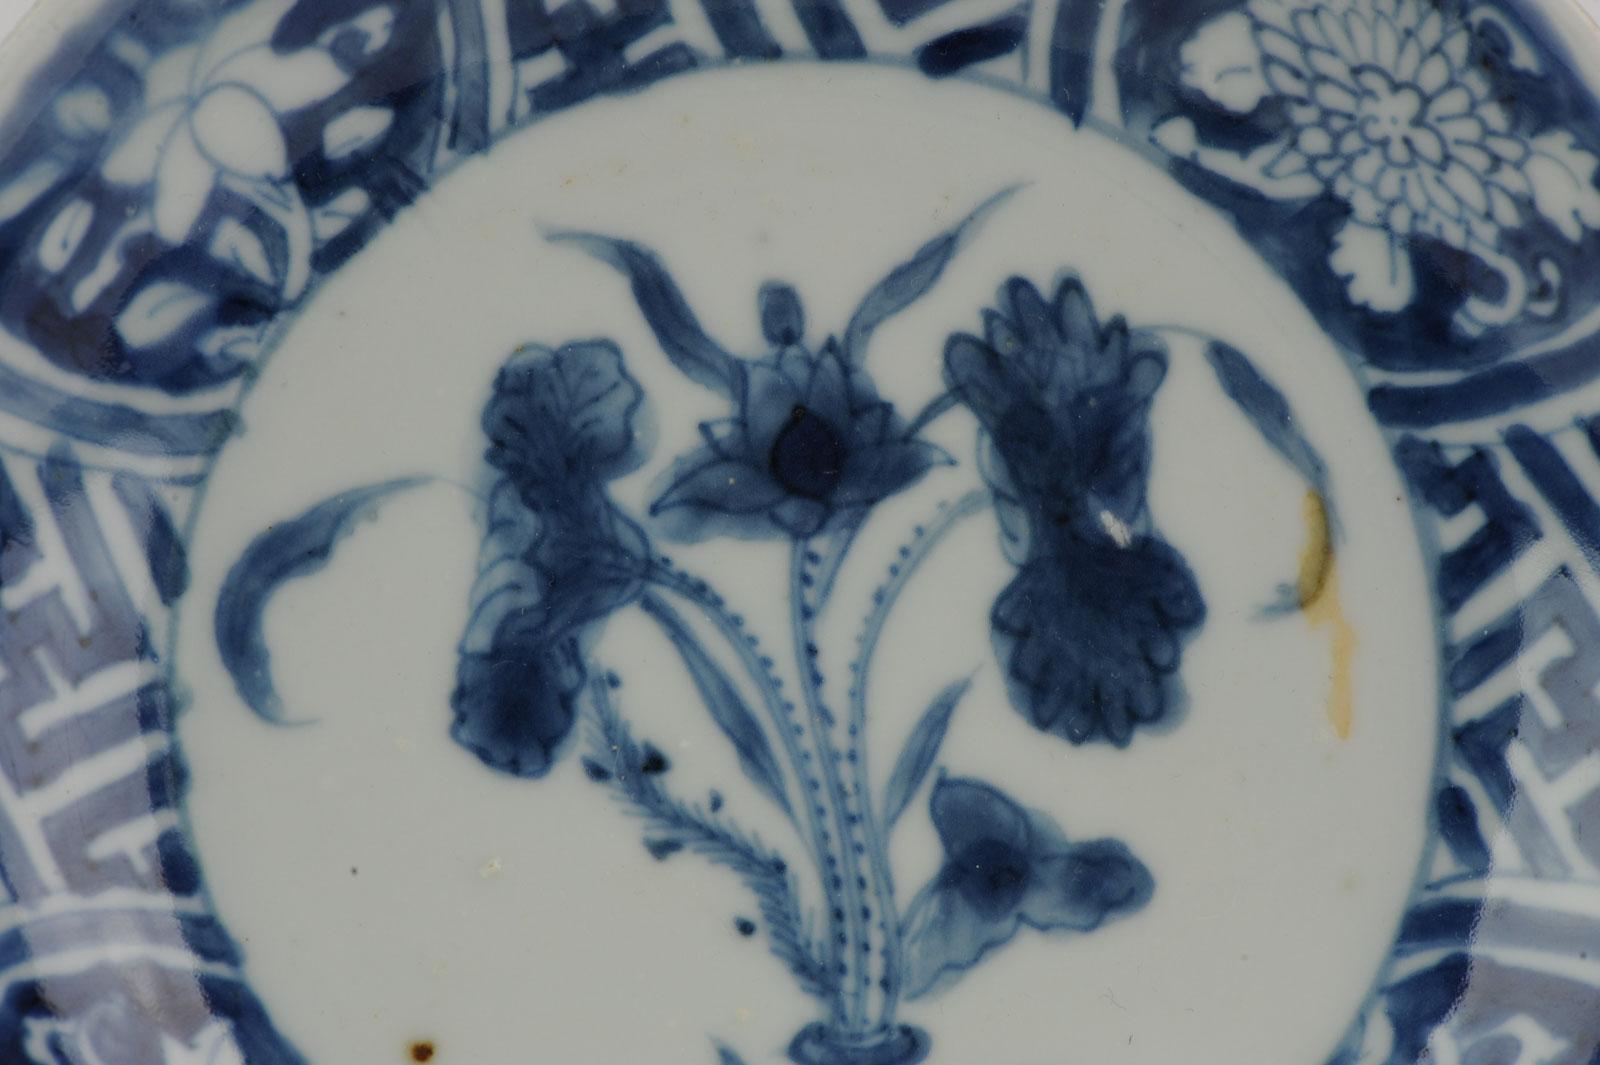 Eine sehr schön dekorierte Schale mit einer Blumenszene und geometrischen Mustern im Rand.

Jingdezhen-Porzellan.

Zusätzliche Informationen:
MATERIAL: Porzellan & Töpferei
Farbe: Blau & Weiß
Der Kaiser: Tafeln
Stil: Tianqi (1620-1627), Wanli